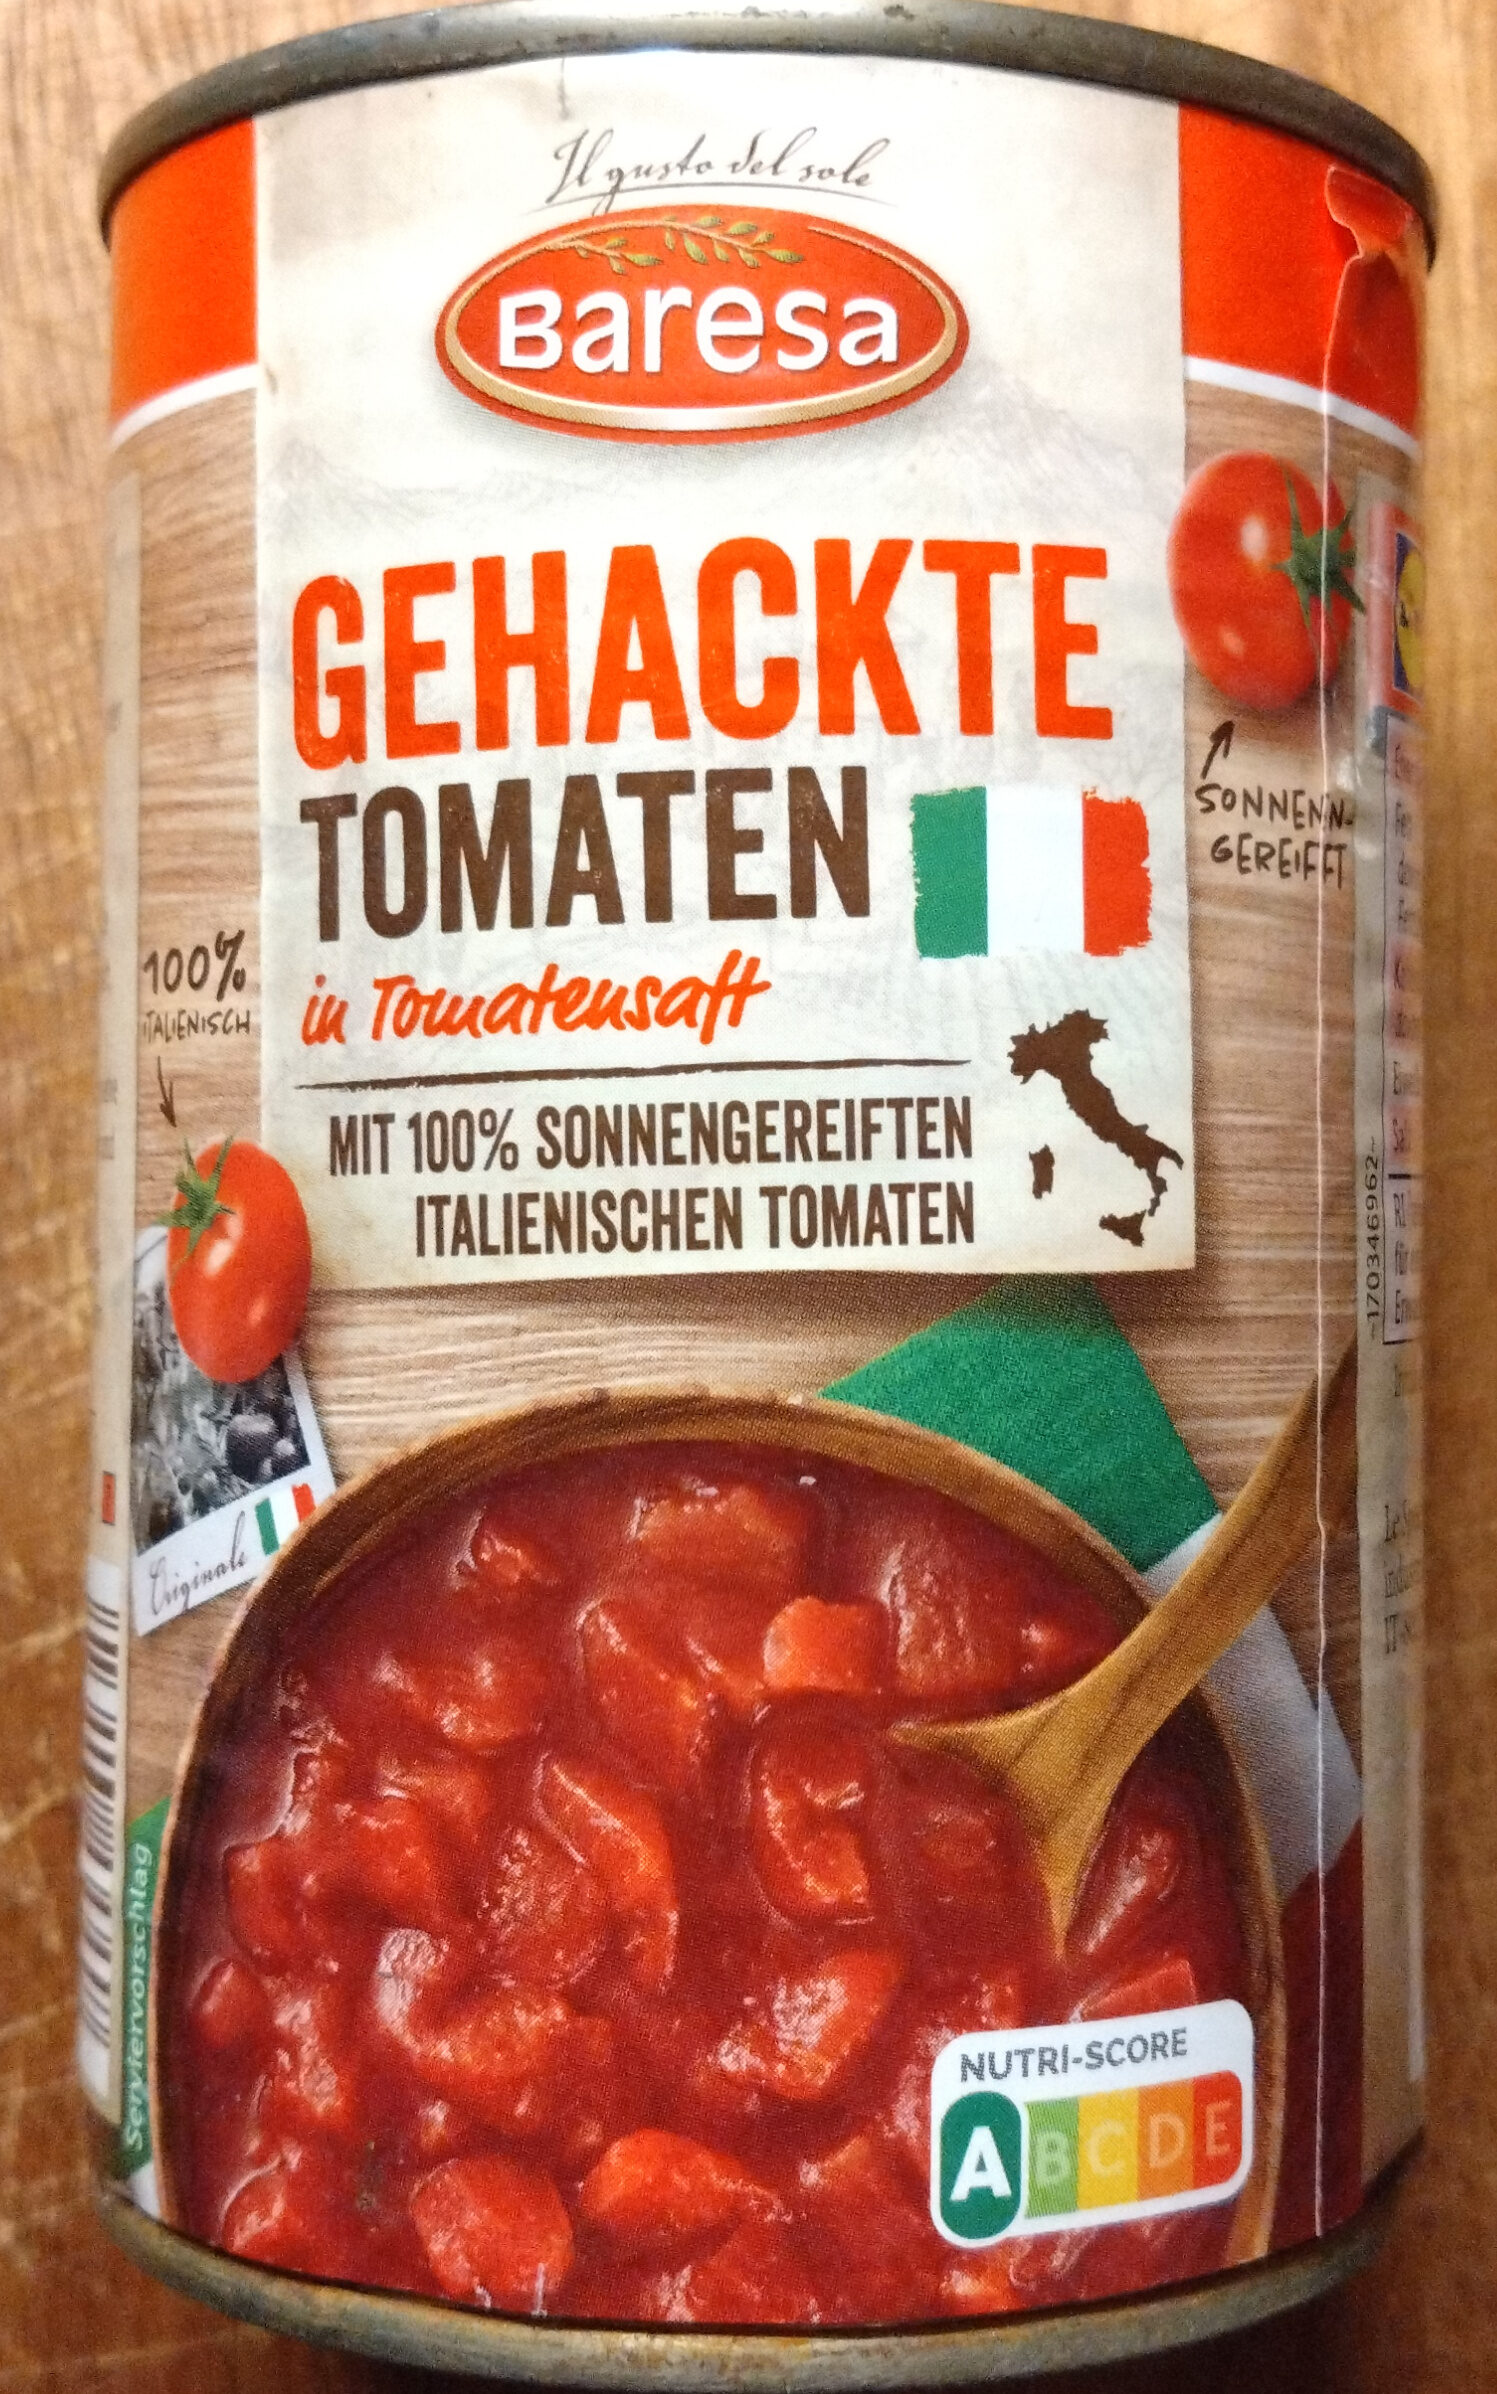 Tomaten gehackt - Produkt - de